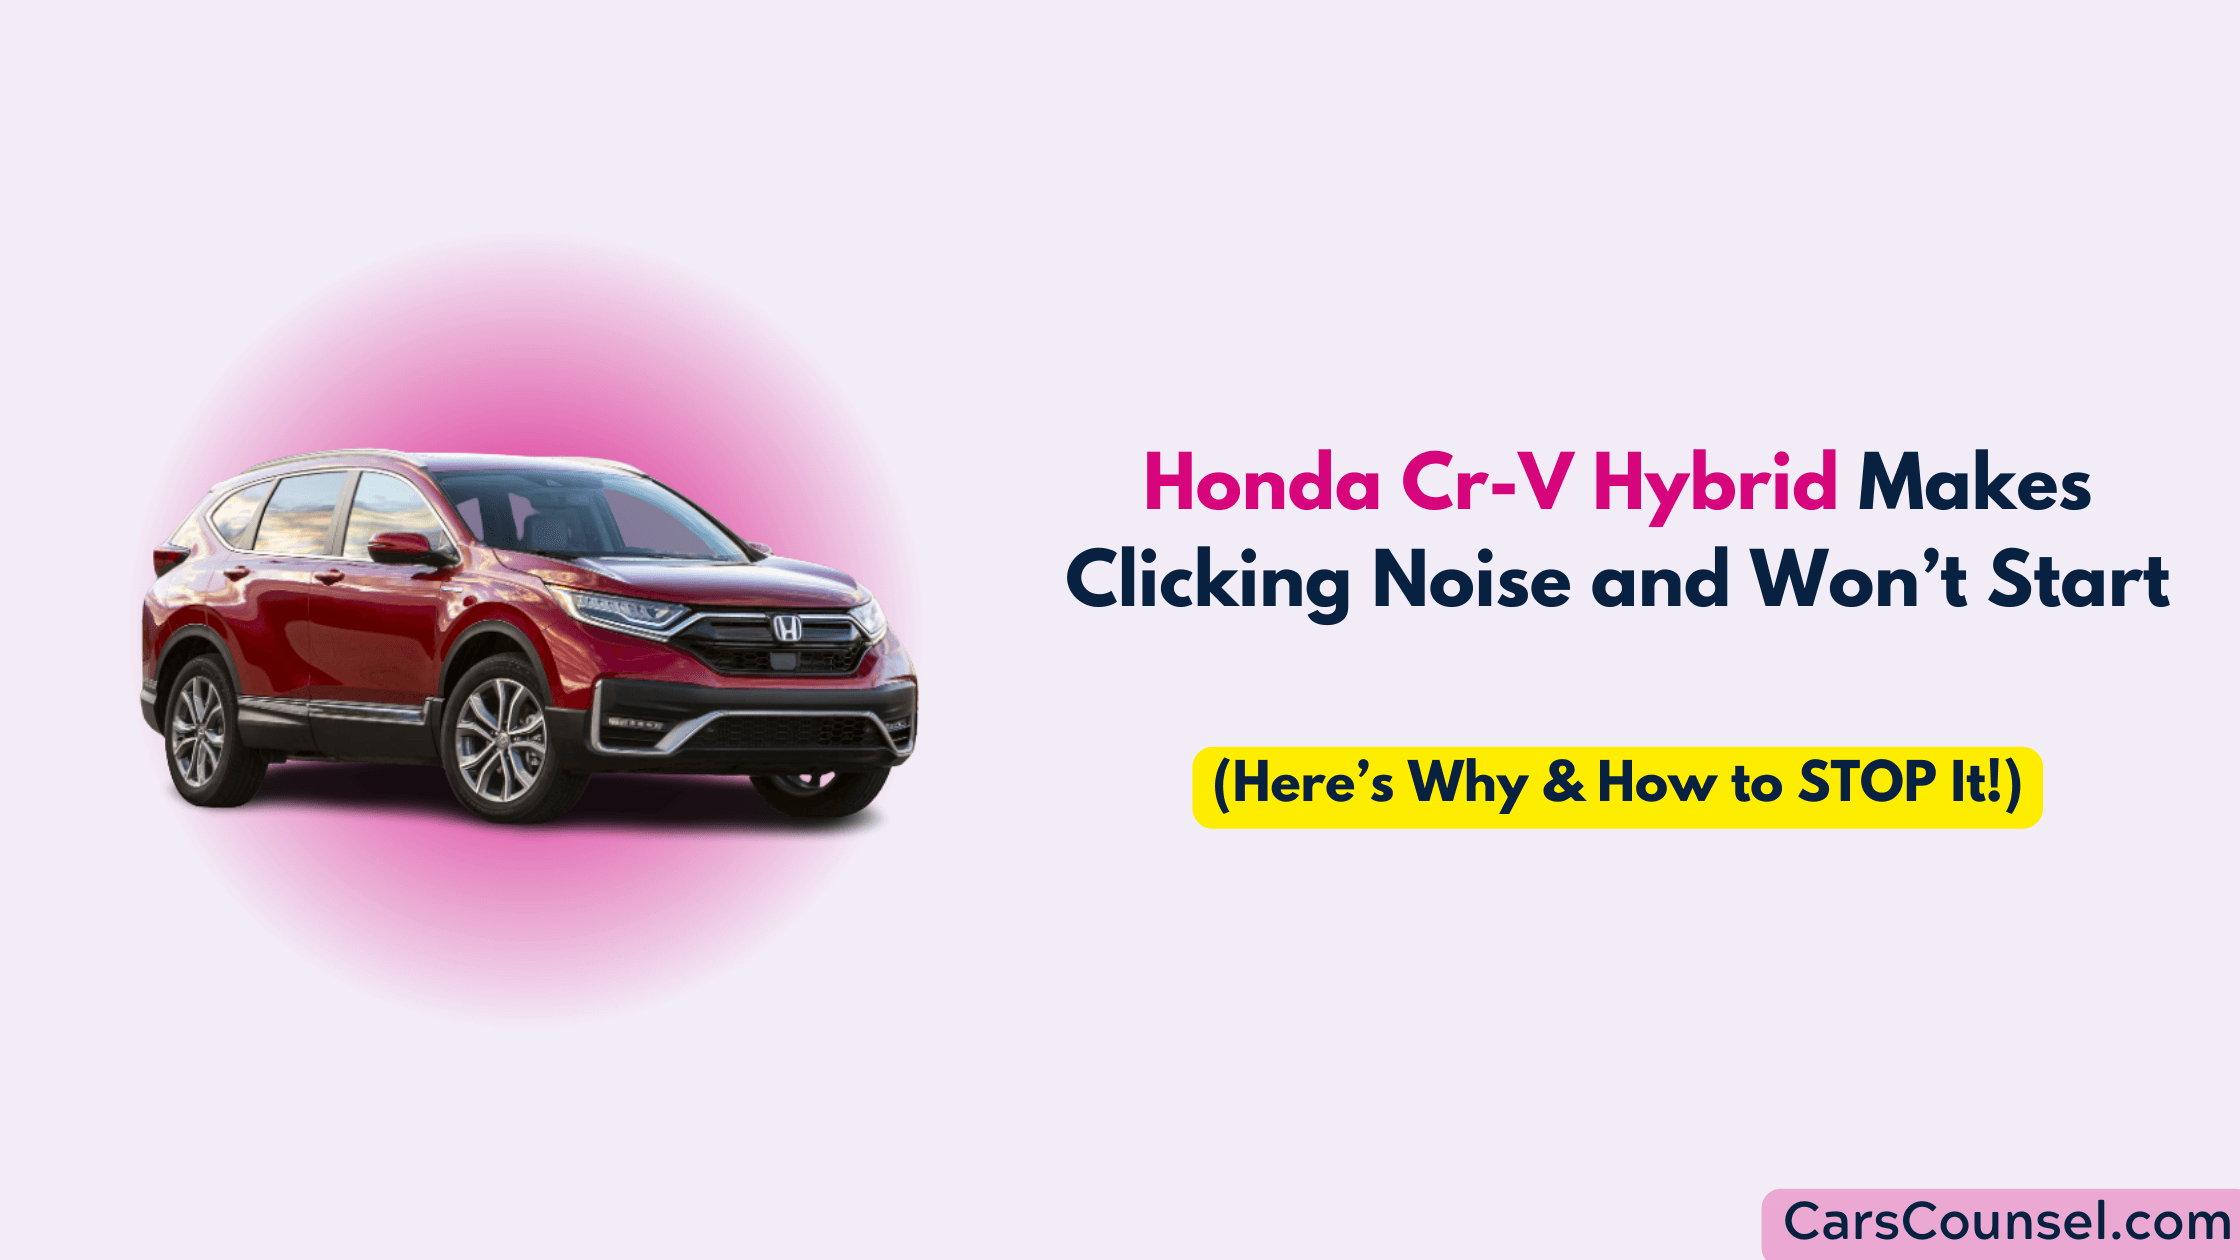 Honda Cr V Hybrid Makes Clicking Noise And Won’t Start